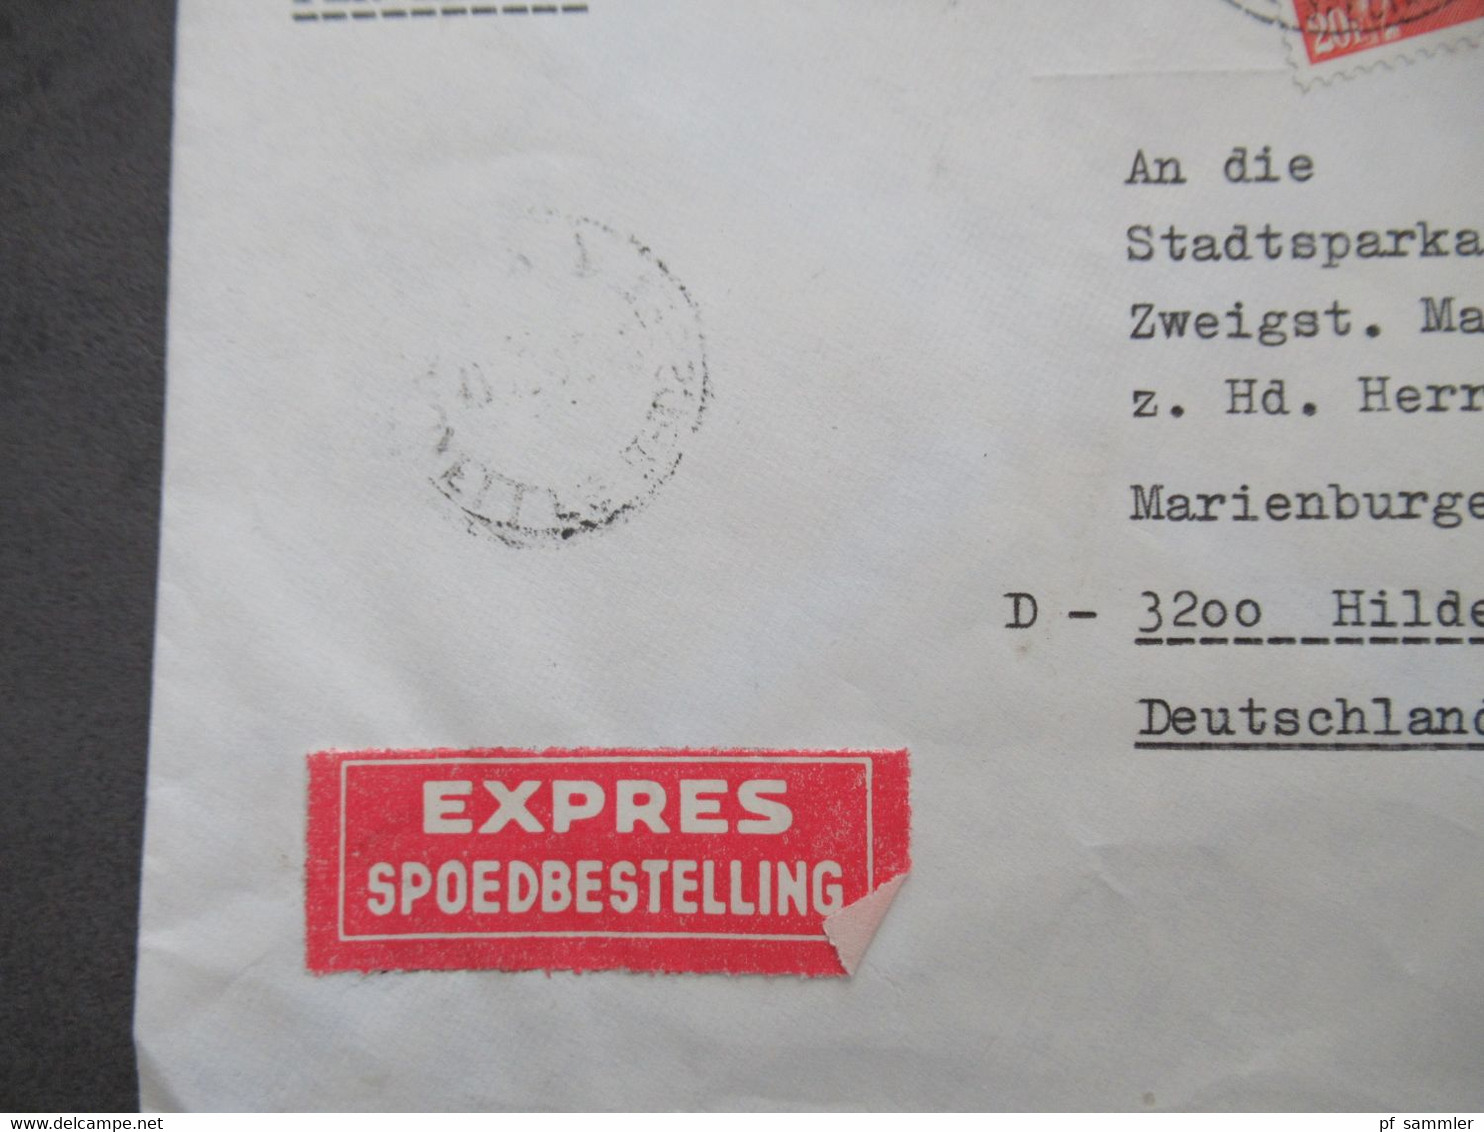 Belgien Auslandsbrief 1970 Per Expres Spoedbestelling An Die SPK Hildesheim Zweigstelle Marienburger Höhe - Brieven En Documenten